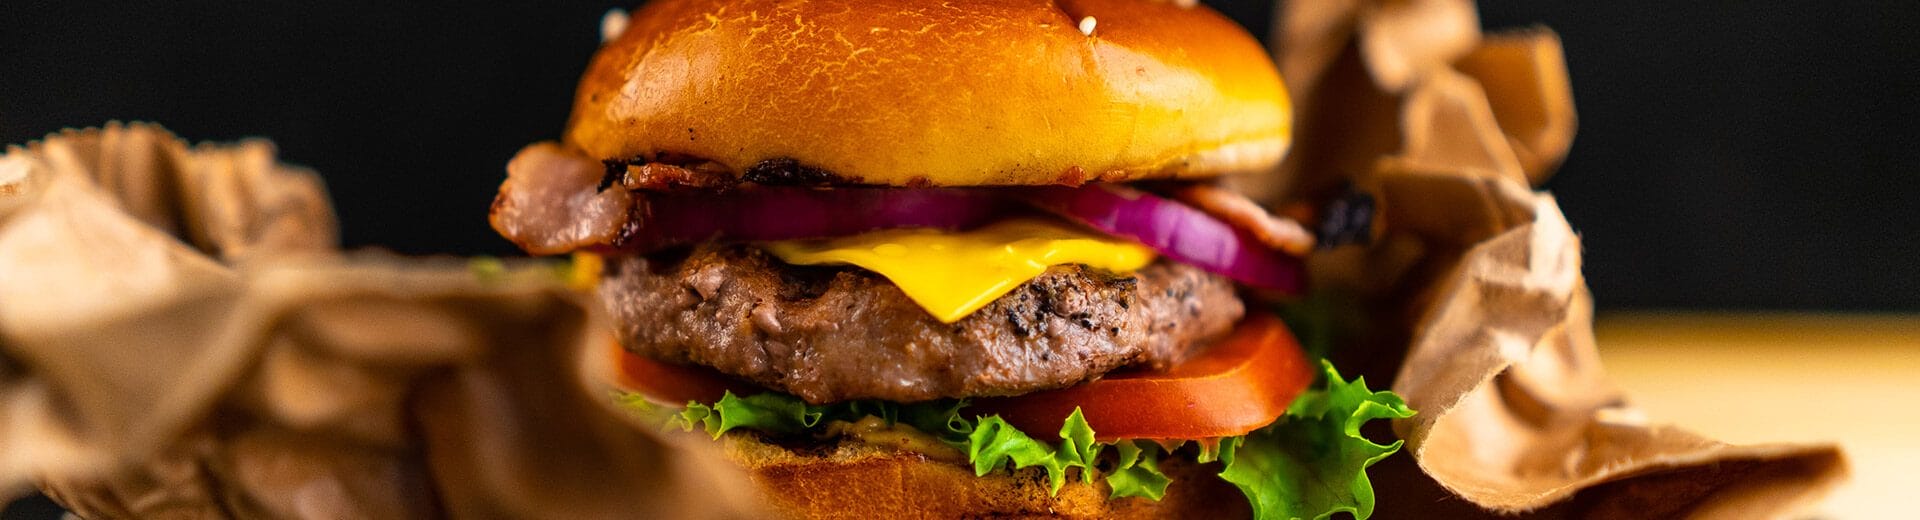 L’hamburger tra pregiudizi e miti da sfatare